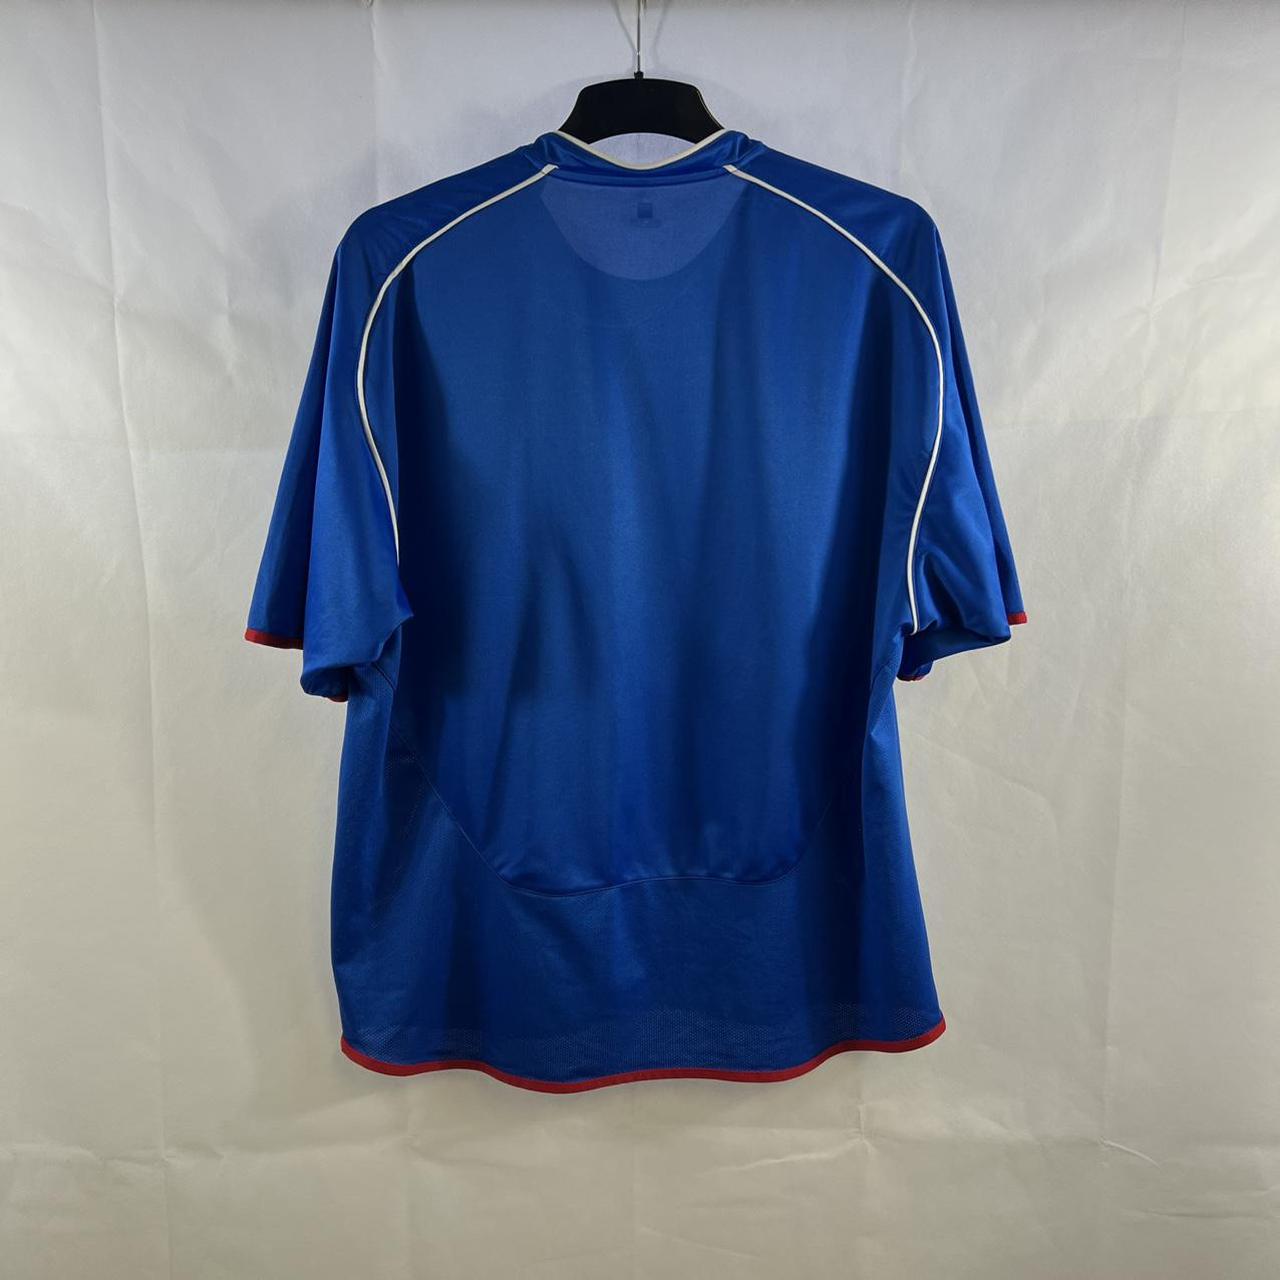 Rangers Home Football Shirt 2005/06 Adults XL Umbro... - Depop